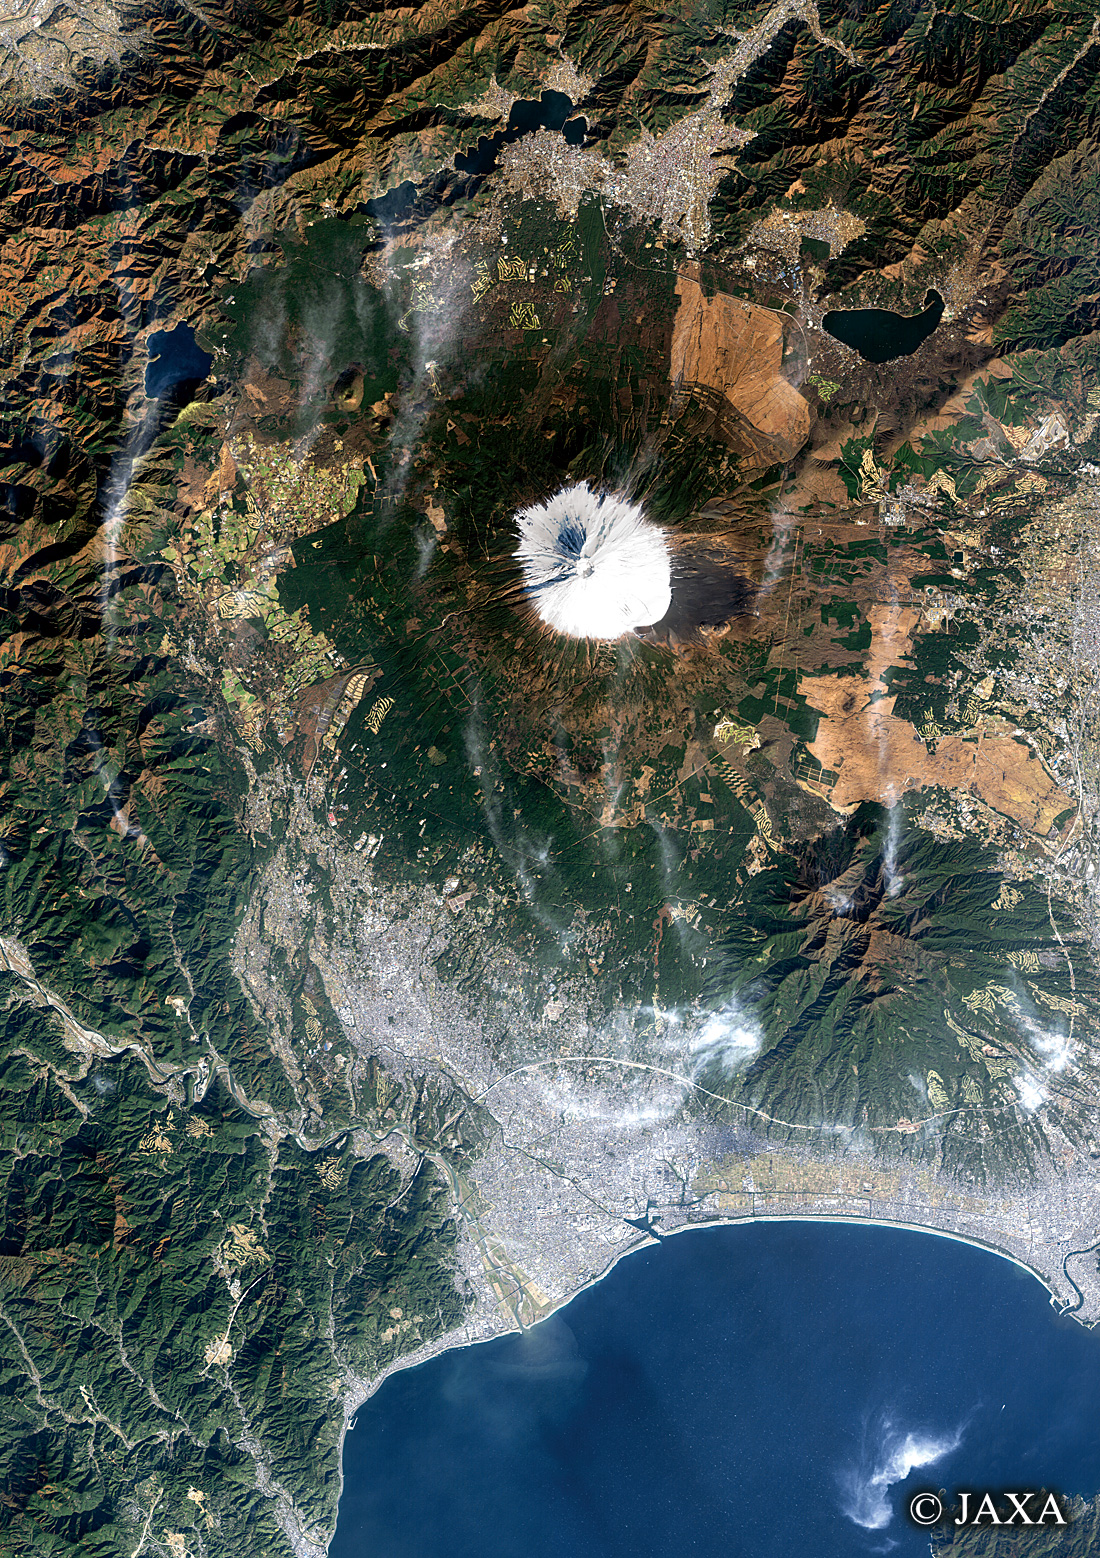 だいちから見た日本の都市 富士山周辺:衛星画像